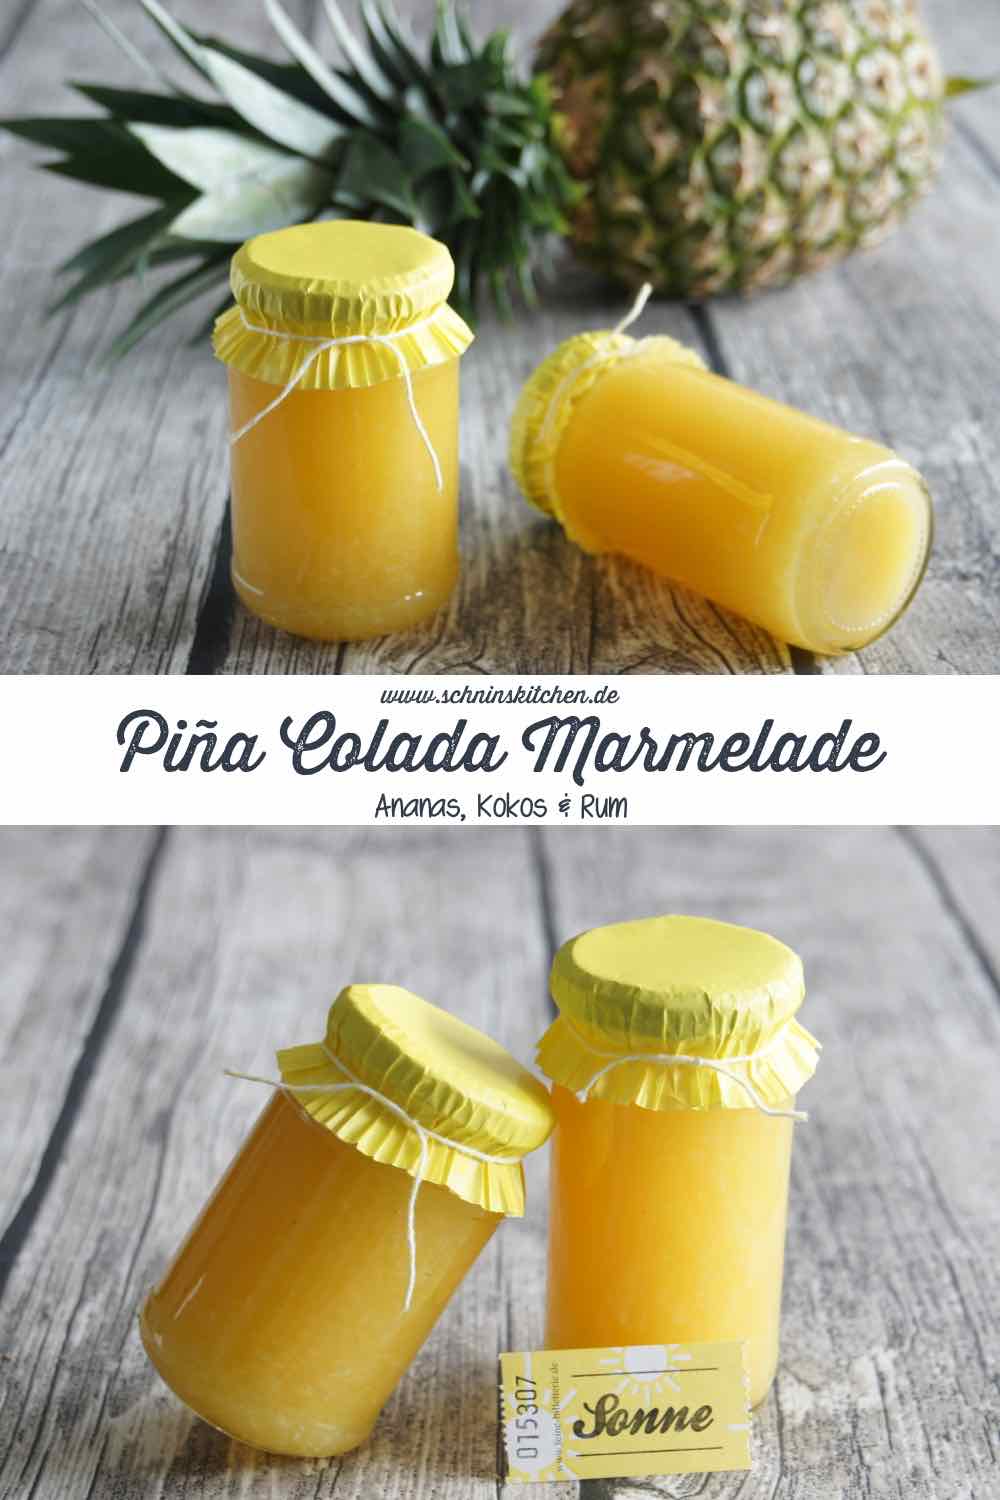 Piña Colada Marmelade - ein tolles Rezept mit Ananas, Kokosraspeln und einem Schuß Karibik-Rum. | www.schninskitchen.de